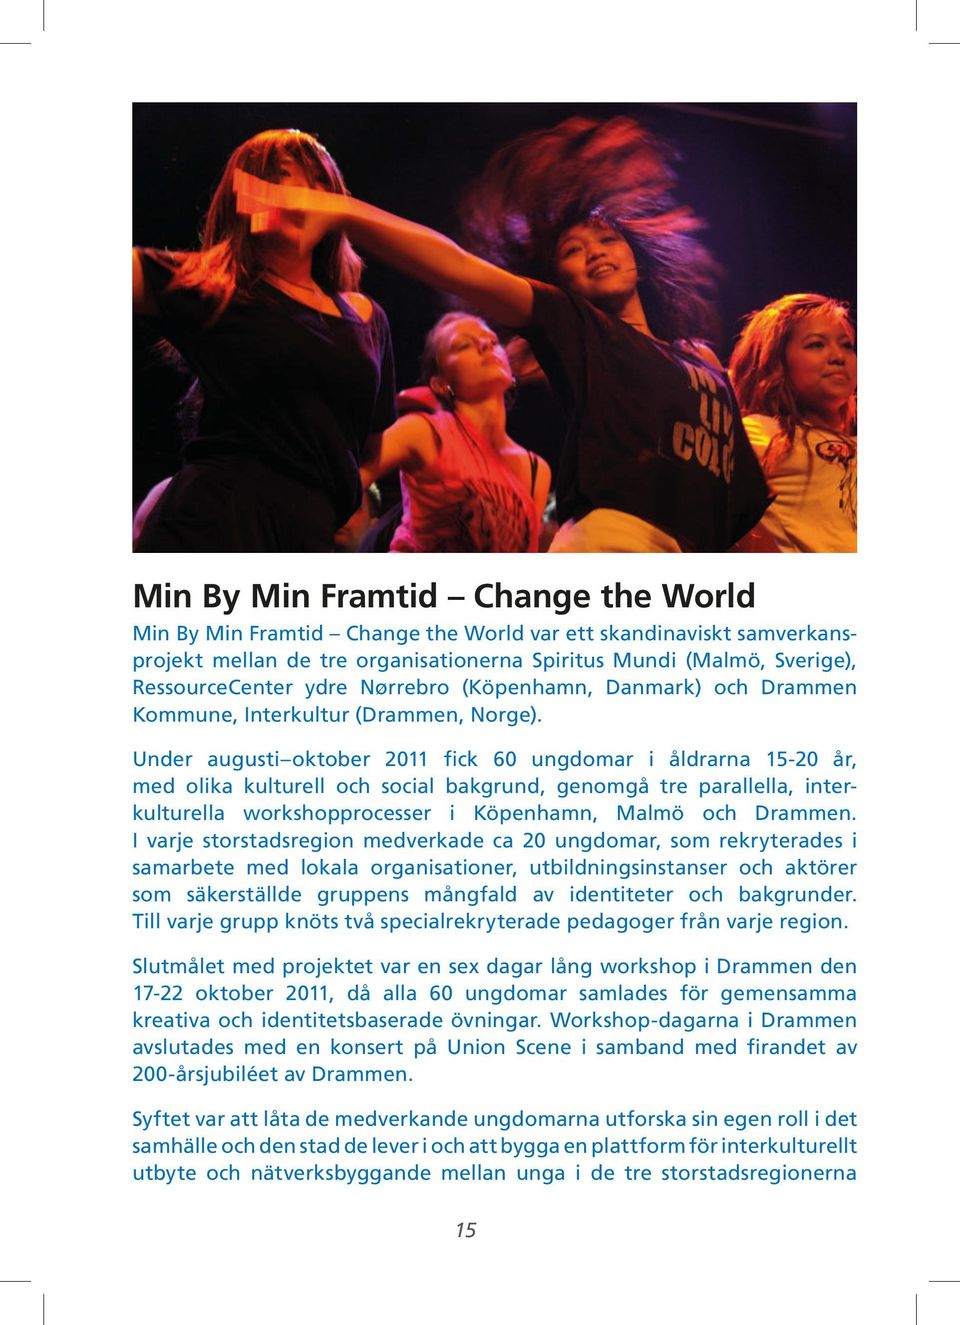 Under augusti oktober 2011 fick 60 ungdomar i åldrarna 15-20 år, med olika kulturell och social bakgrund, genomgå tre parallella, interkulturella workshopprocesser i Köpenhamn, Malmö och Drammen.